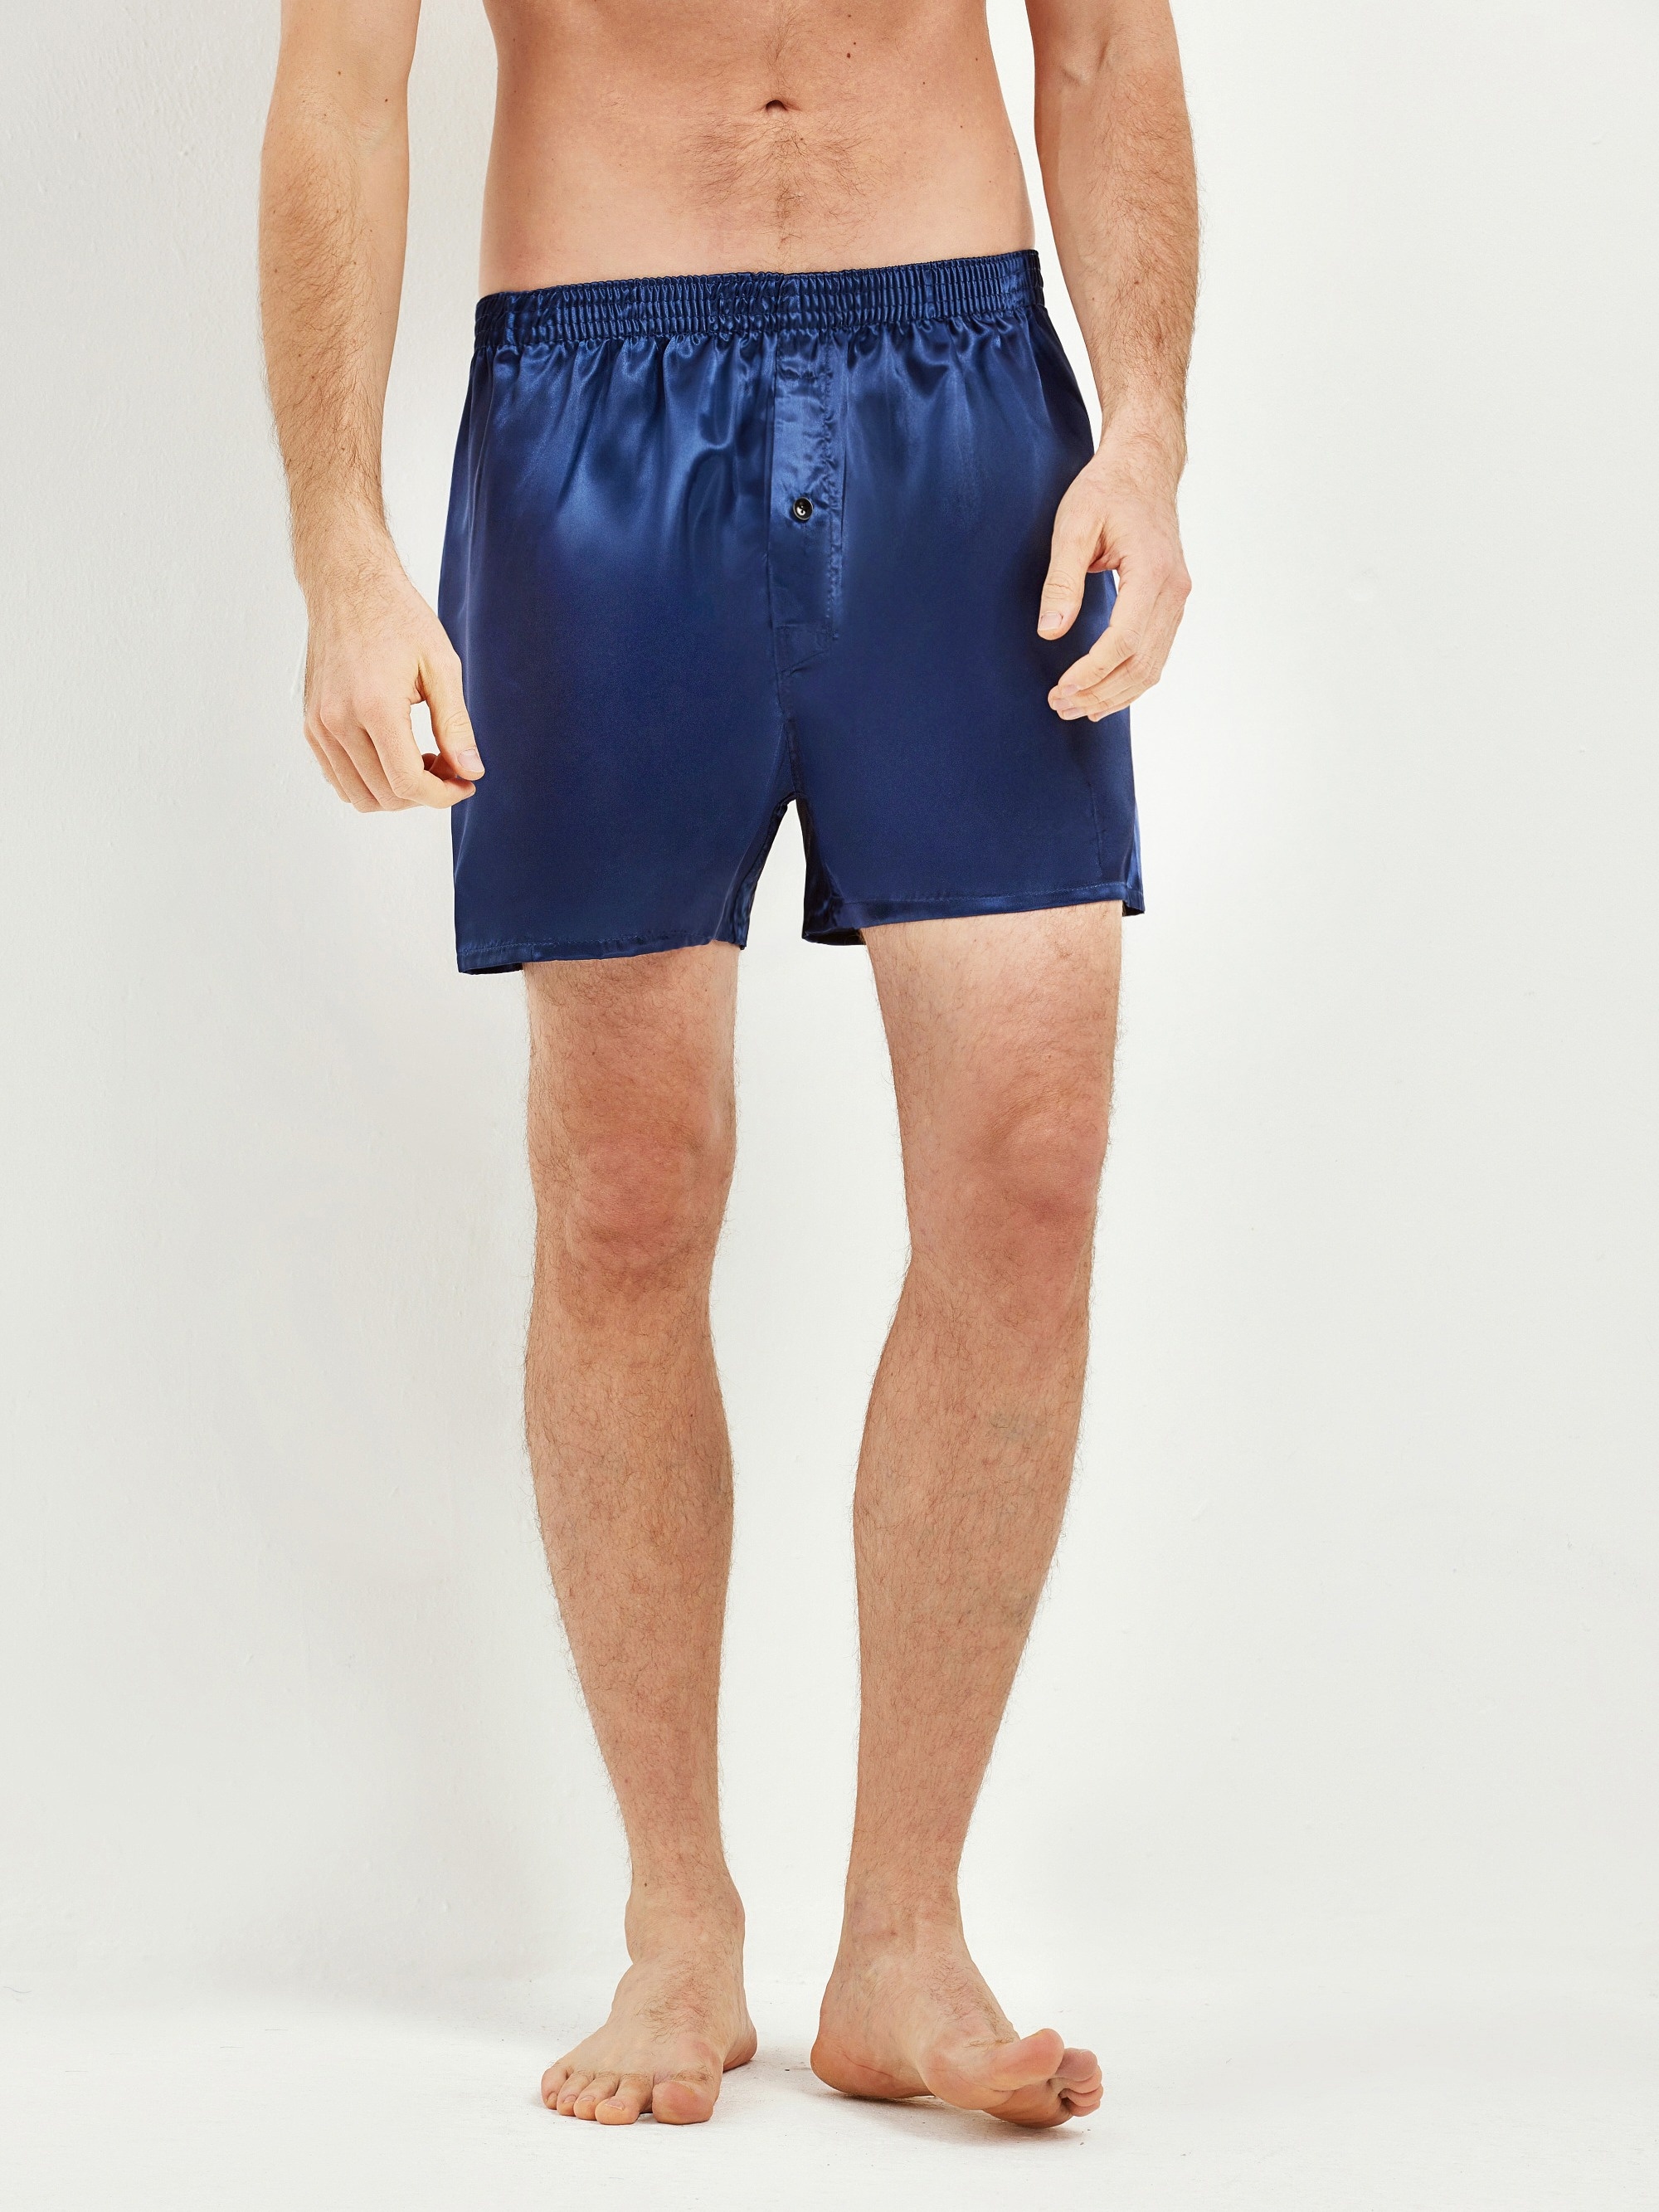 Sanraflic Men's Satin Boxer Shorts, Underwear in Combo Pack